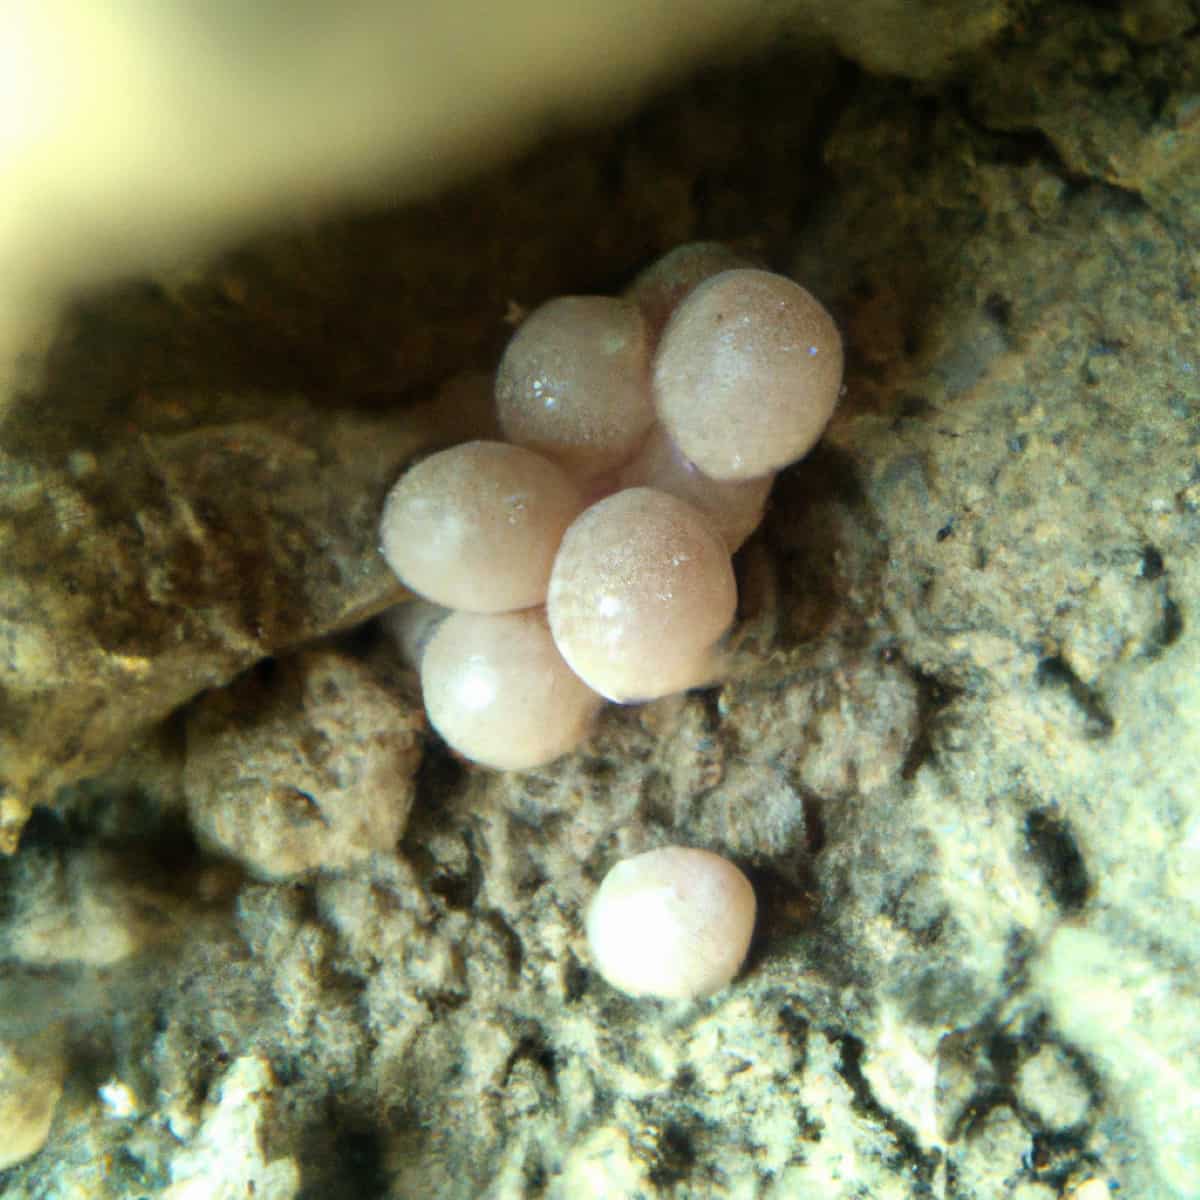 Spider Eggs in Soil